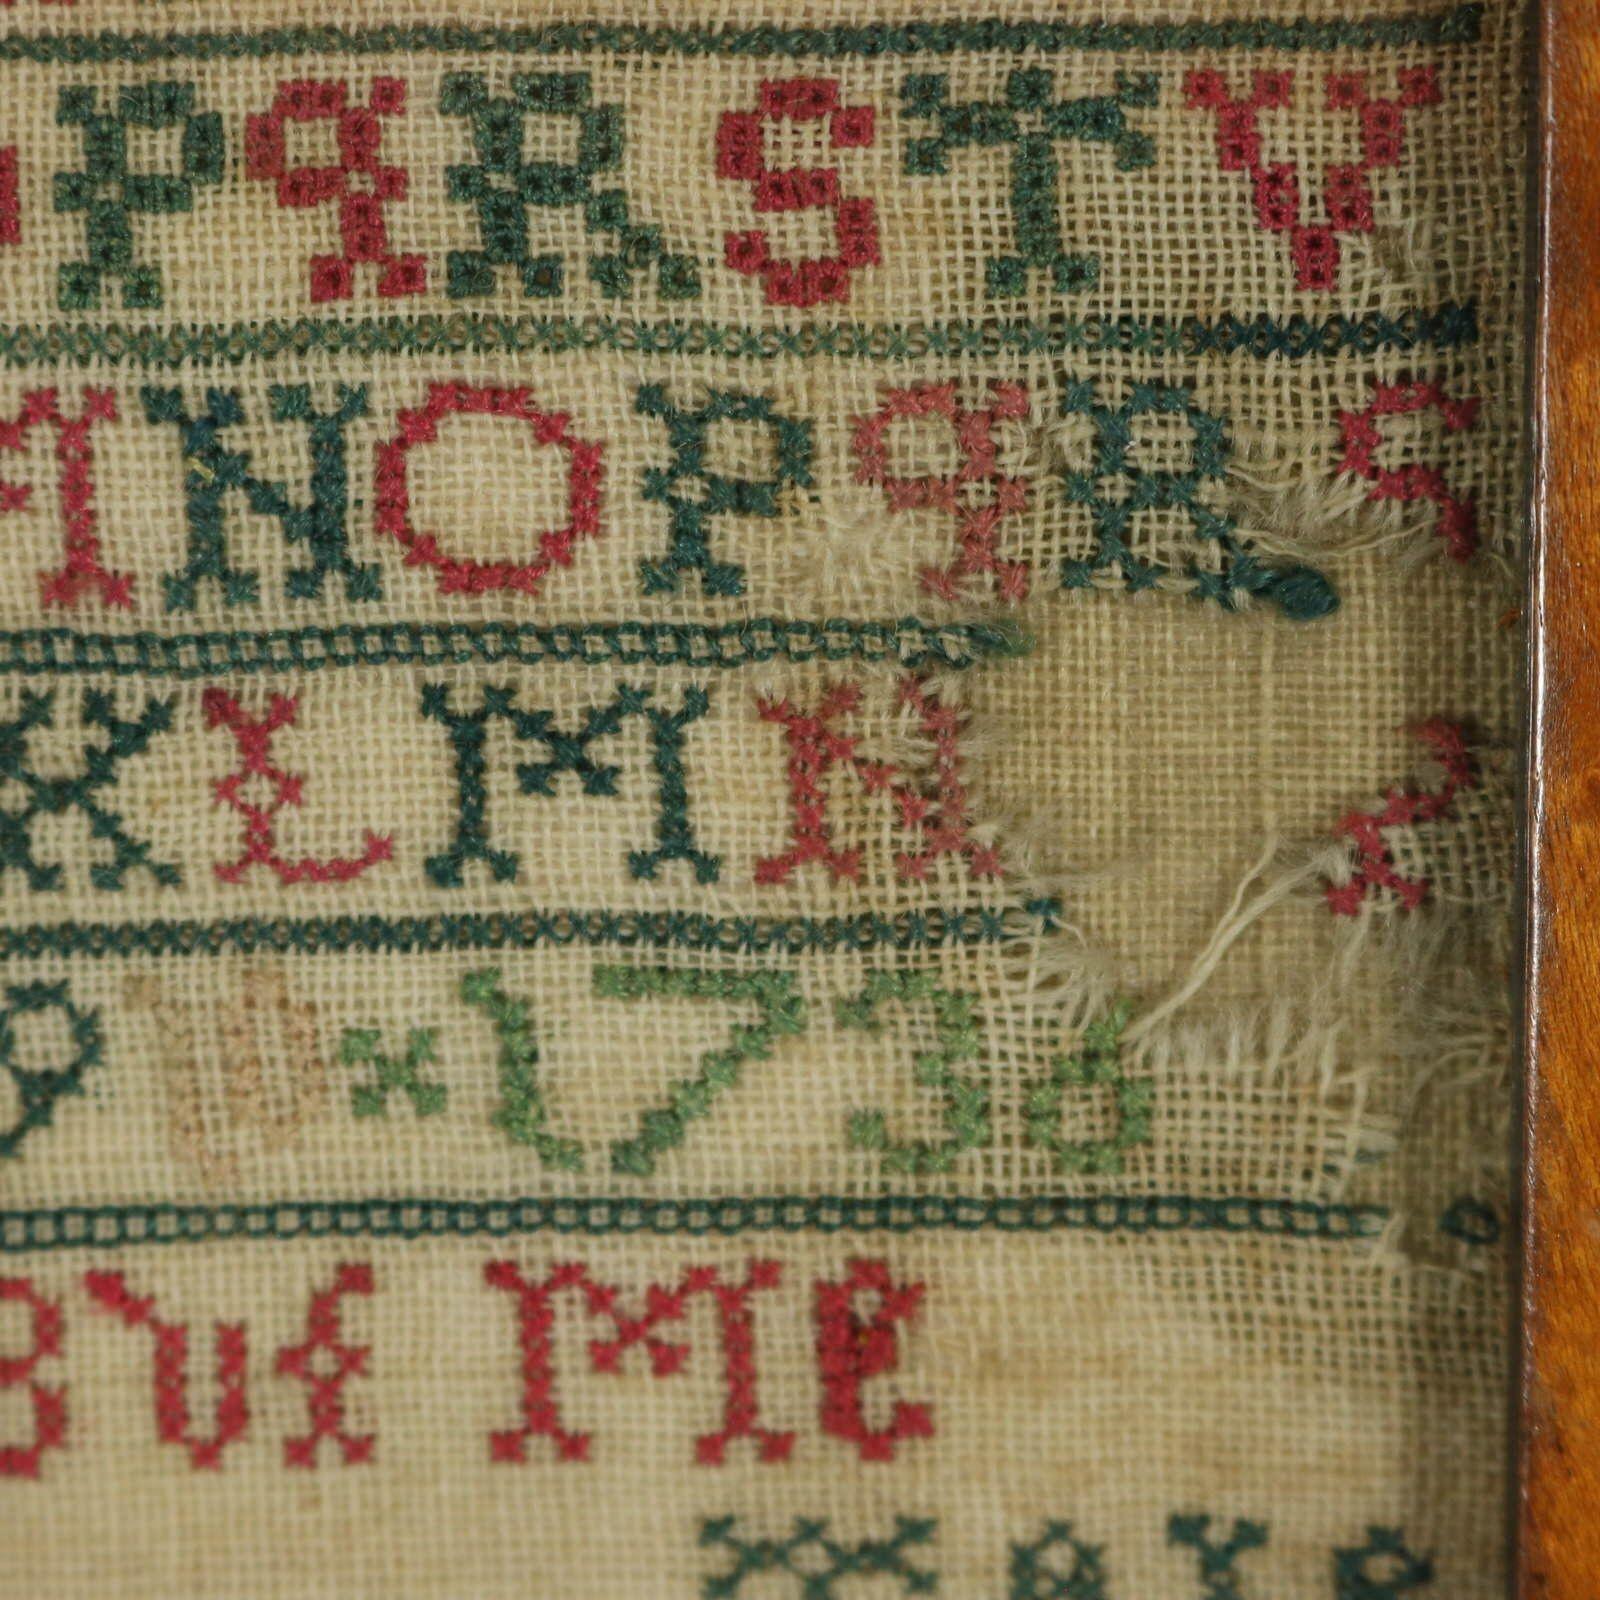 Antique Sampler Stitched in 1736, Scottish For Sale 10